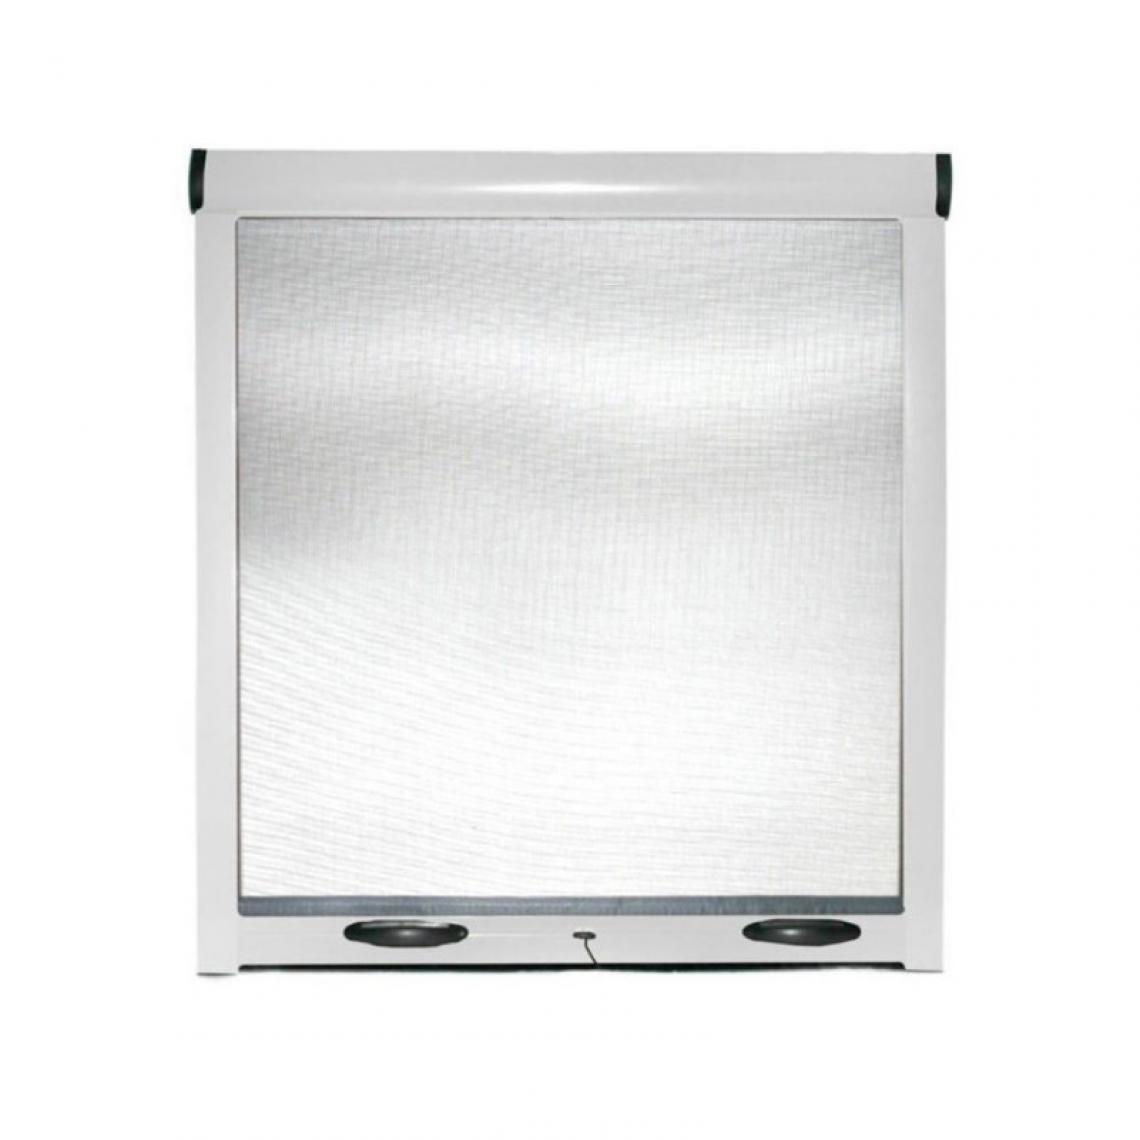 Webmarketpoint - EASY UP Moustiquaire enroulable réductible pour fenêtre verticale Blanc 80x170 cm - Moustiquaire Fenêtre